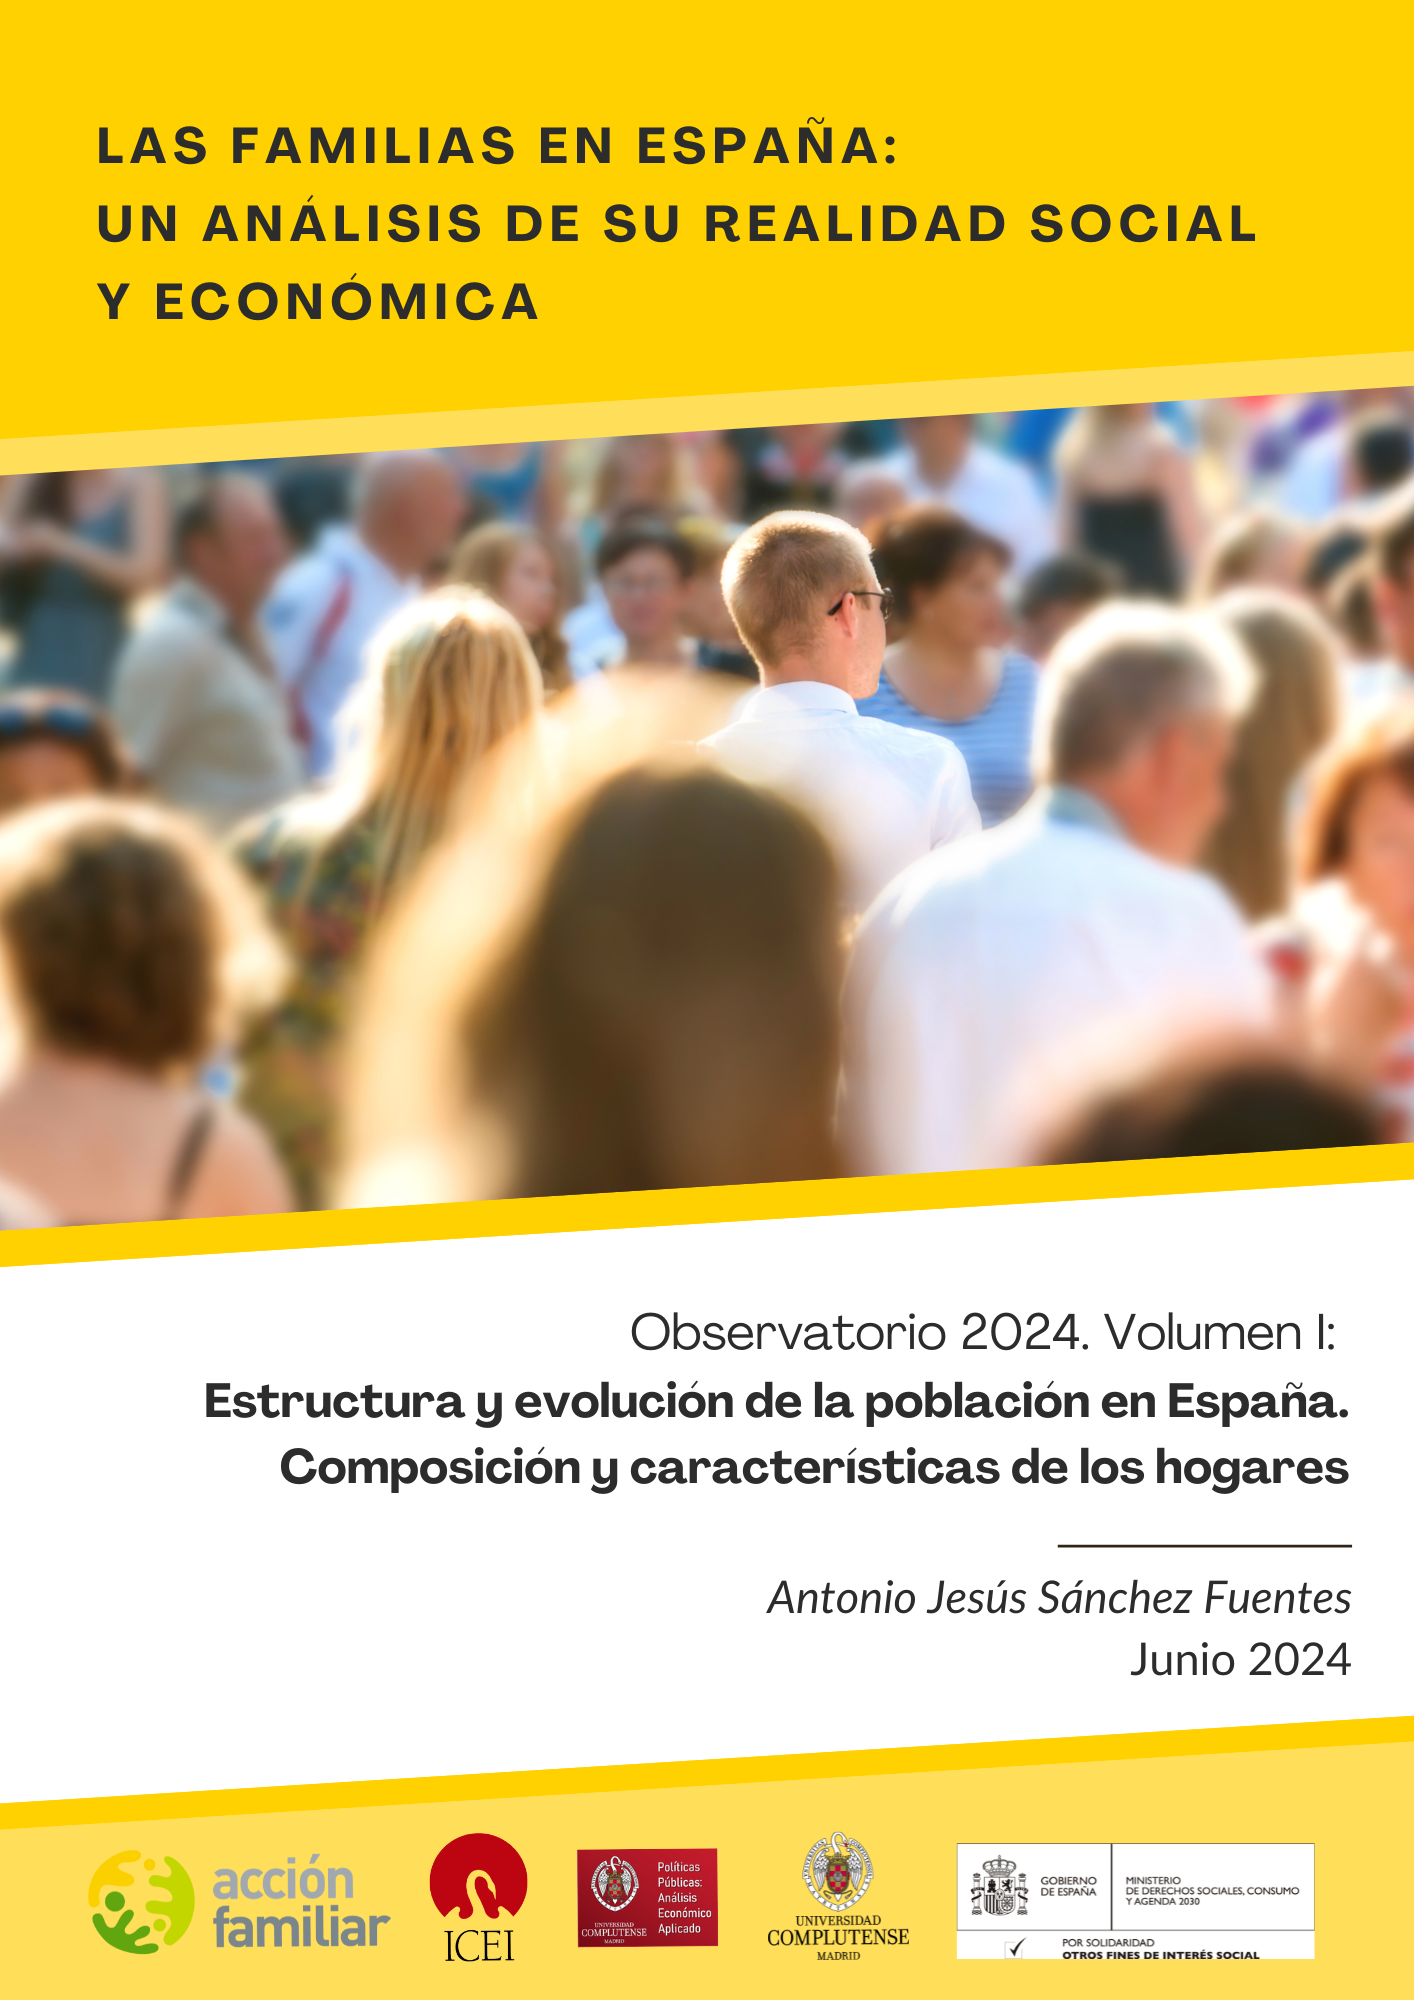 Volumen I: Estructura y evolución de la población en España. Composición y características de los hogares.